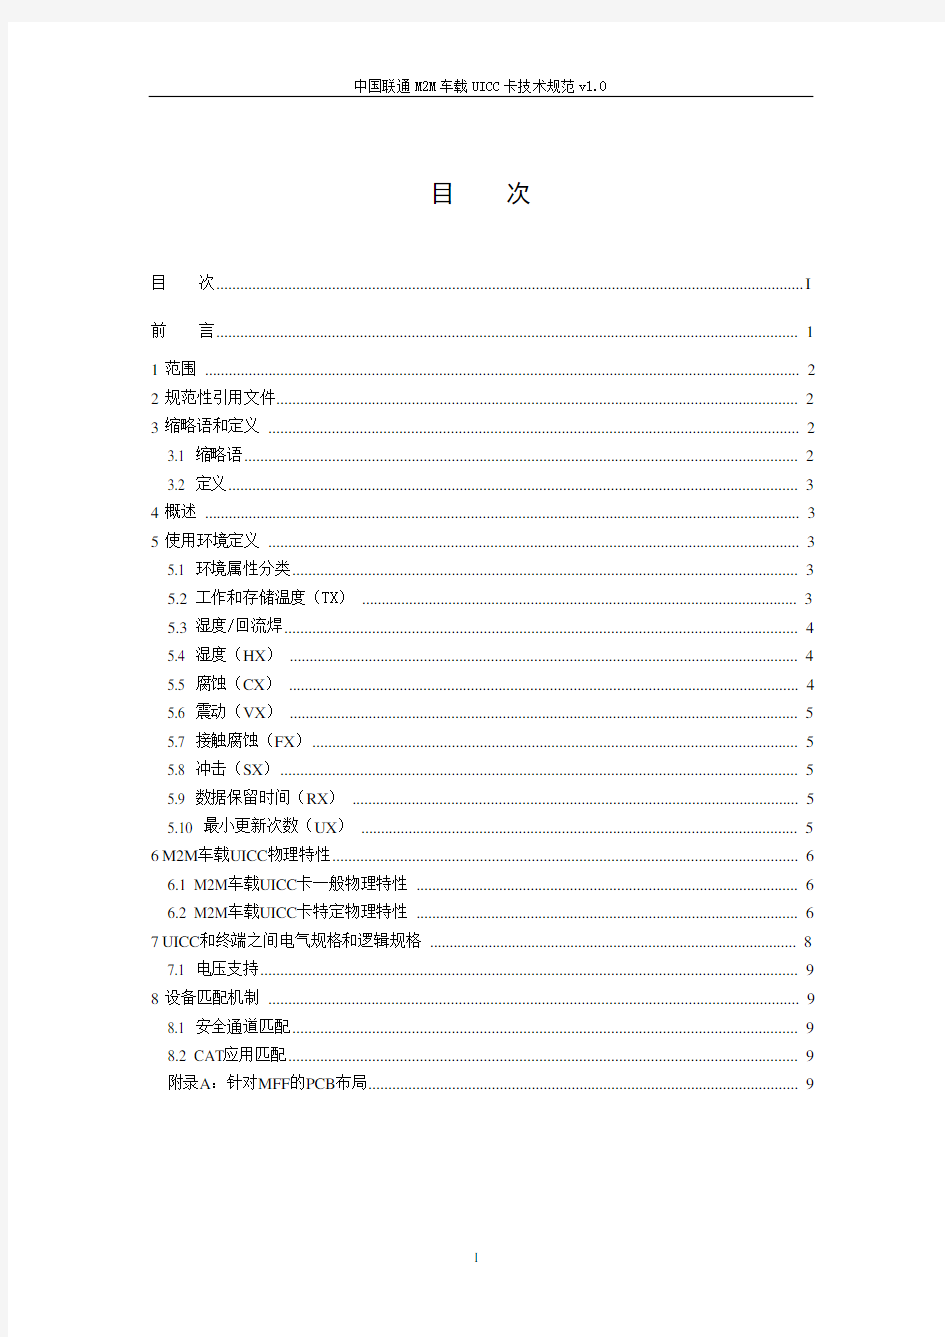 (技术规范标准)中国联通MM车载UICC卡技术规范XXXX